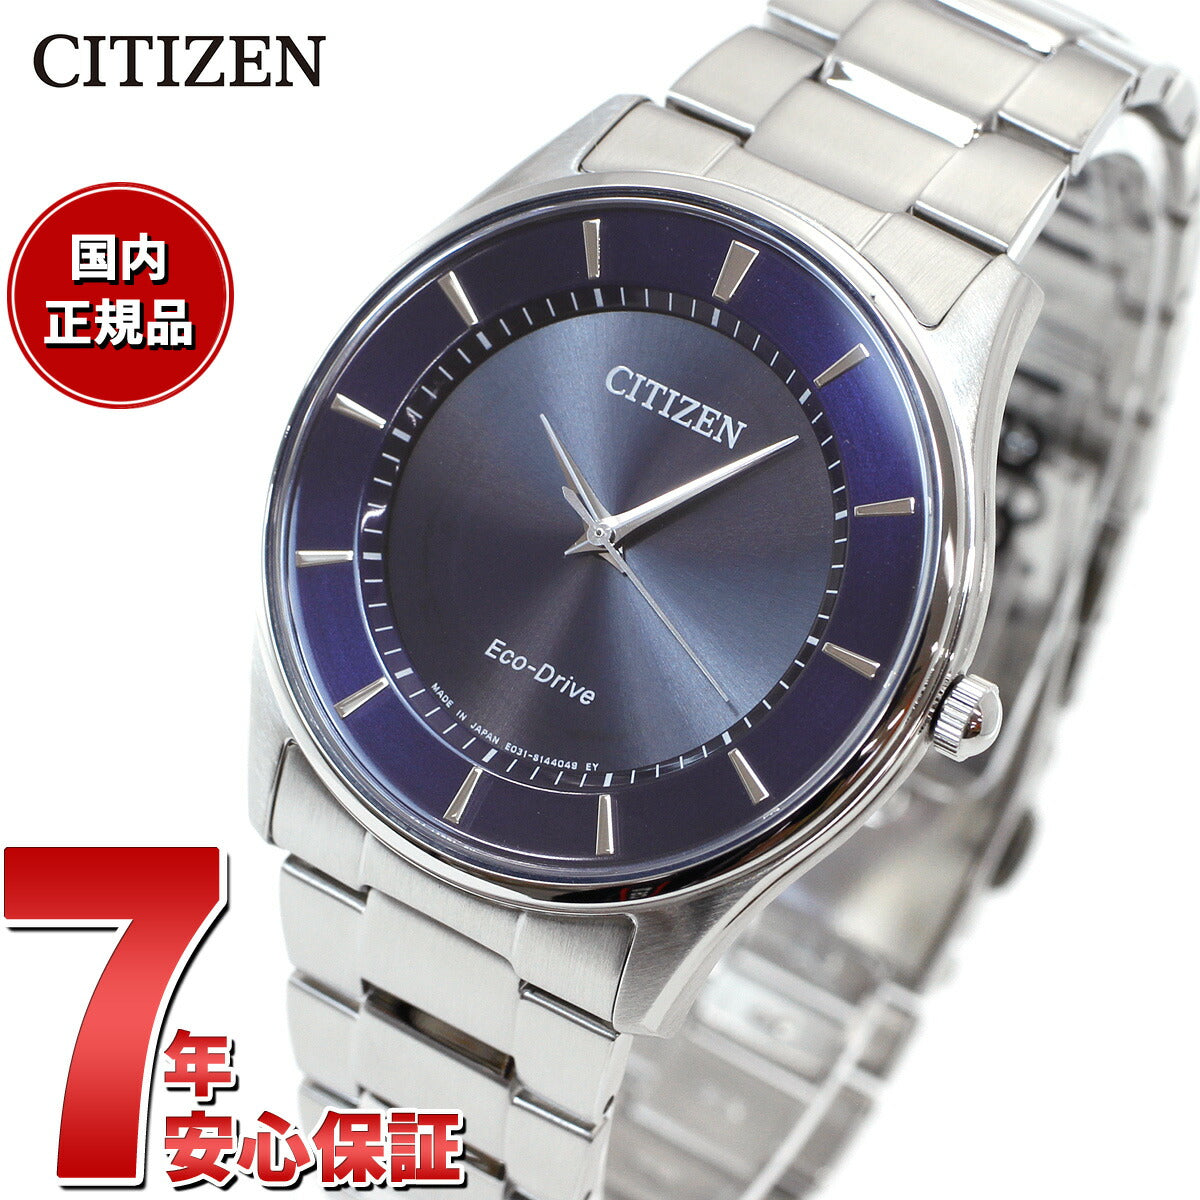 シチズン CITIZEN コレクション エコドライブ ソーラー 腕時計 メンズ ペアモデル BJ6480-51L